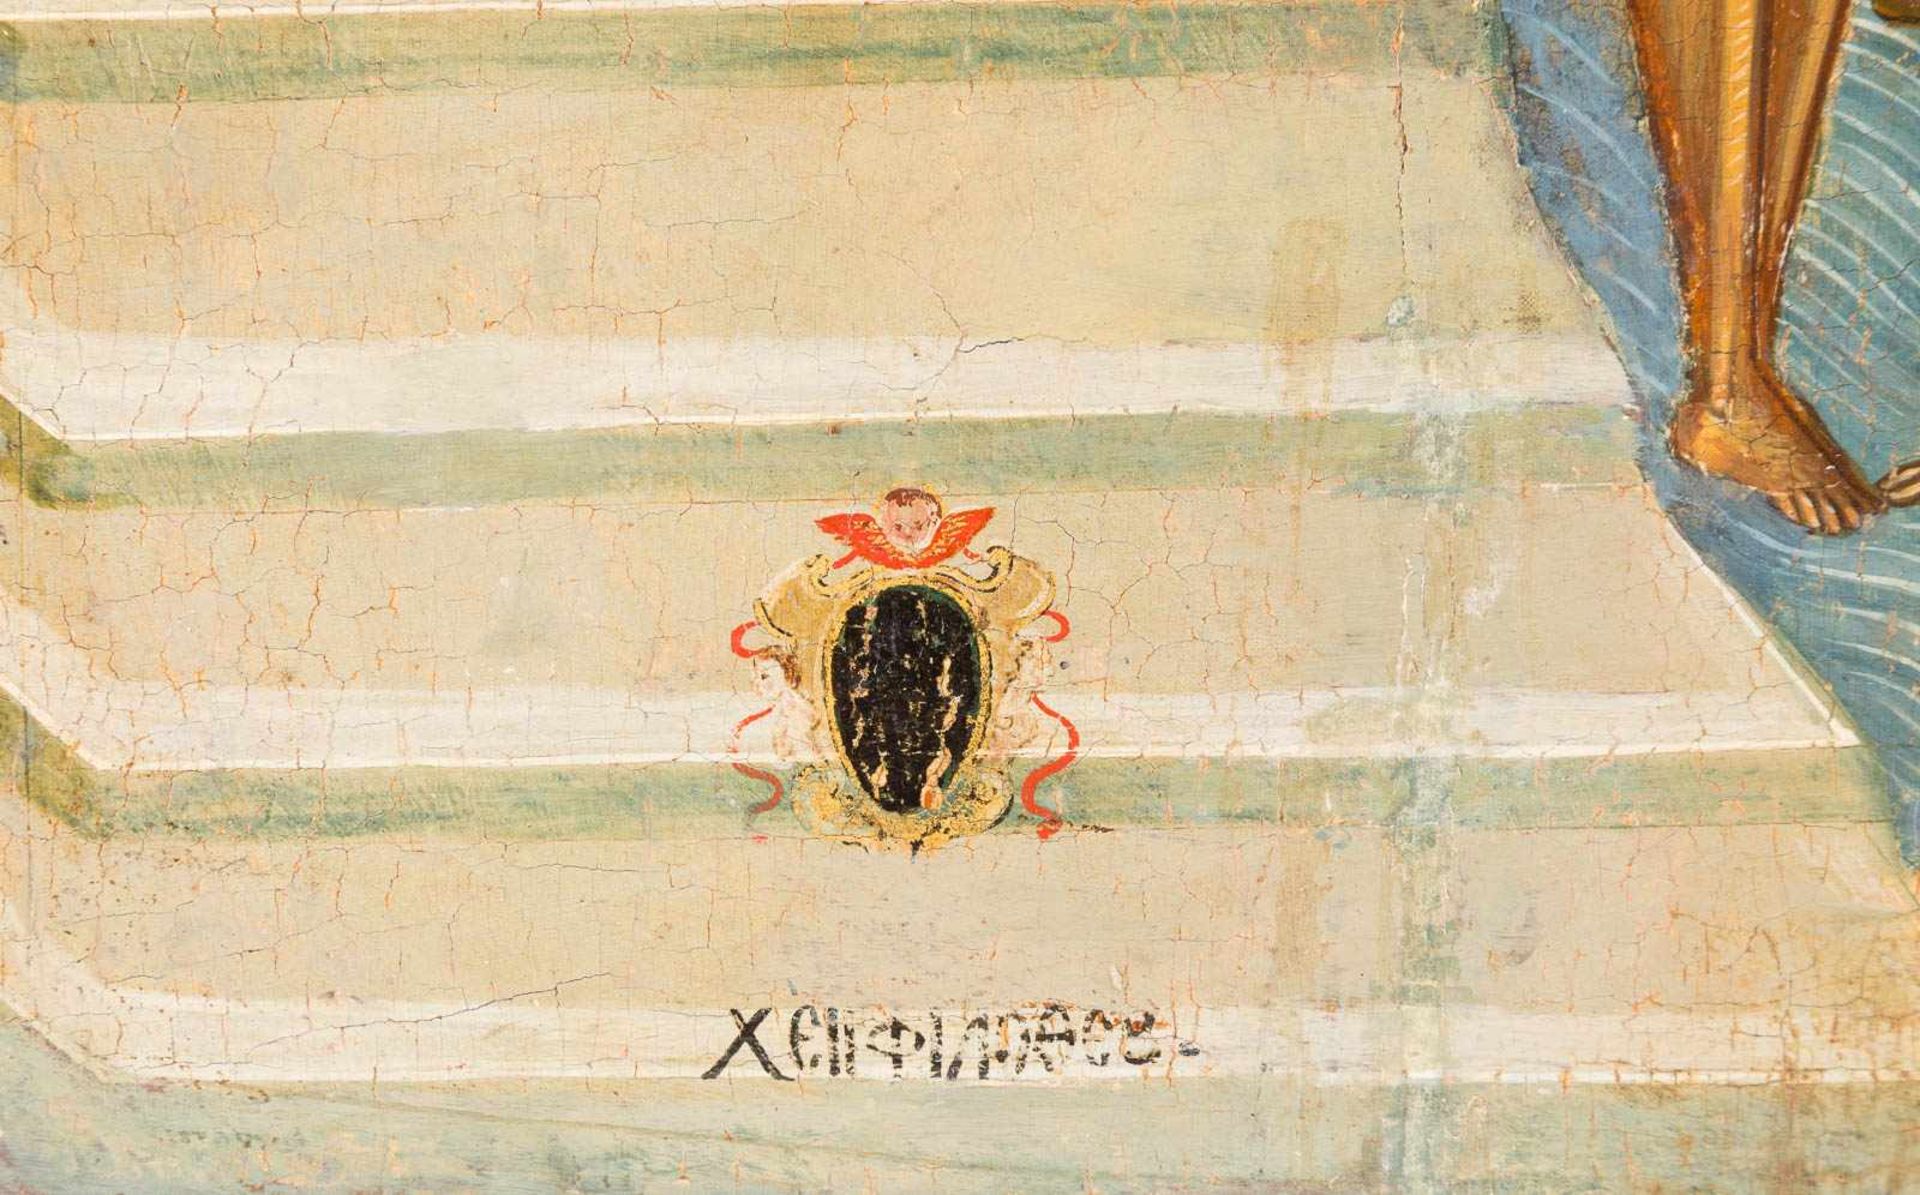 FILOTHEOS SCOUFOS1638 Chania/Kreta - 1685 ZakynthosGROSSE SIGNIERTE IKONE MIT DEN 40 MÄRTYRERN VON - Bild 2 aus 4